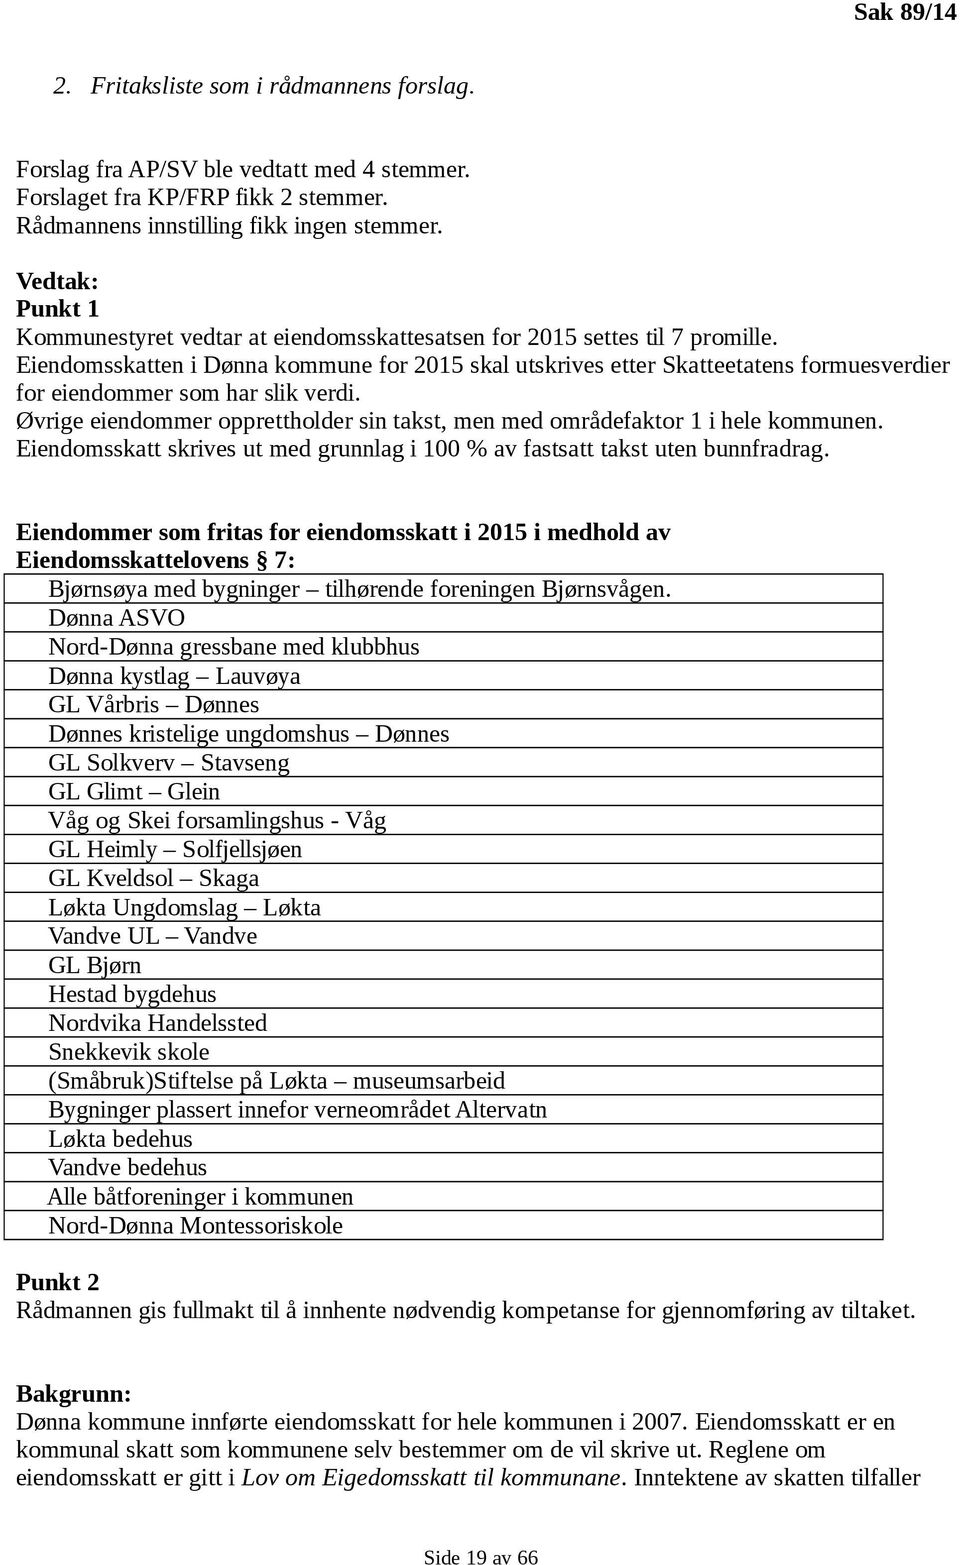 Eiendomsskatten i Dønna kommune for 2015 skal utskrives etter Skatteetatens formuesverdier for eiendommer som har slik verdi.